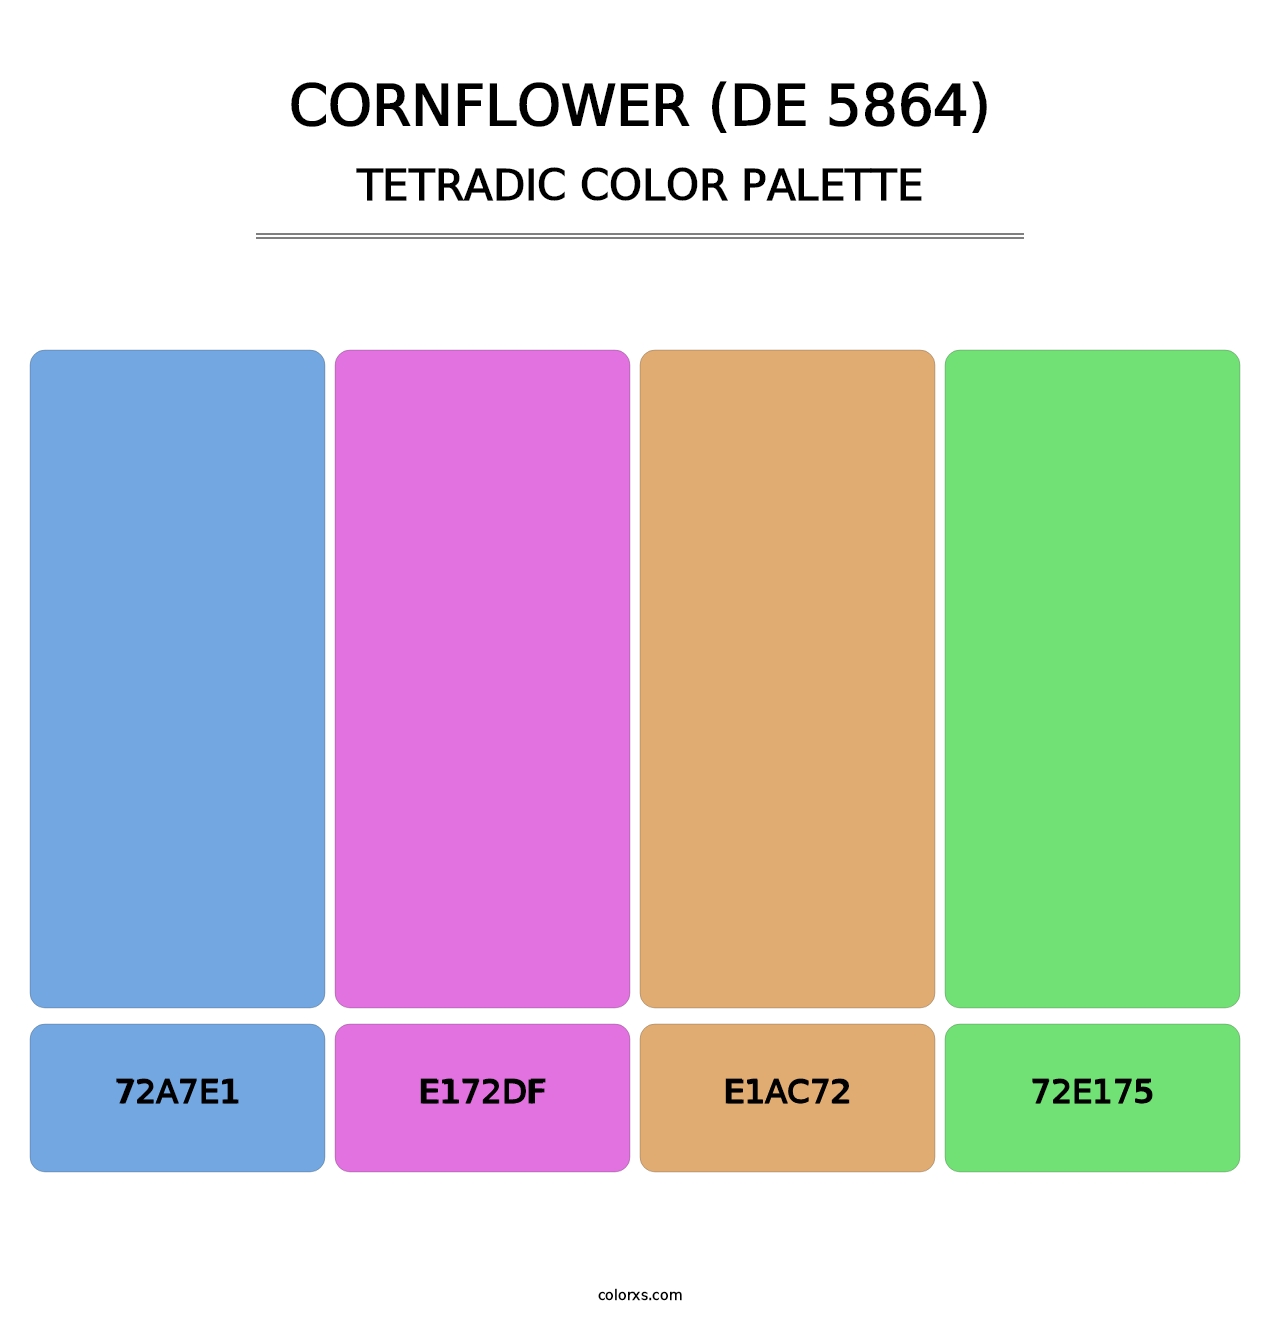 Cornflower (DE 5864) - Tetradic Color Palette